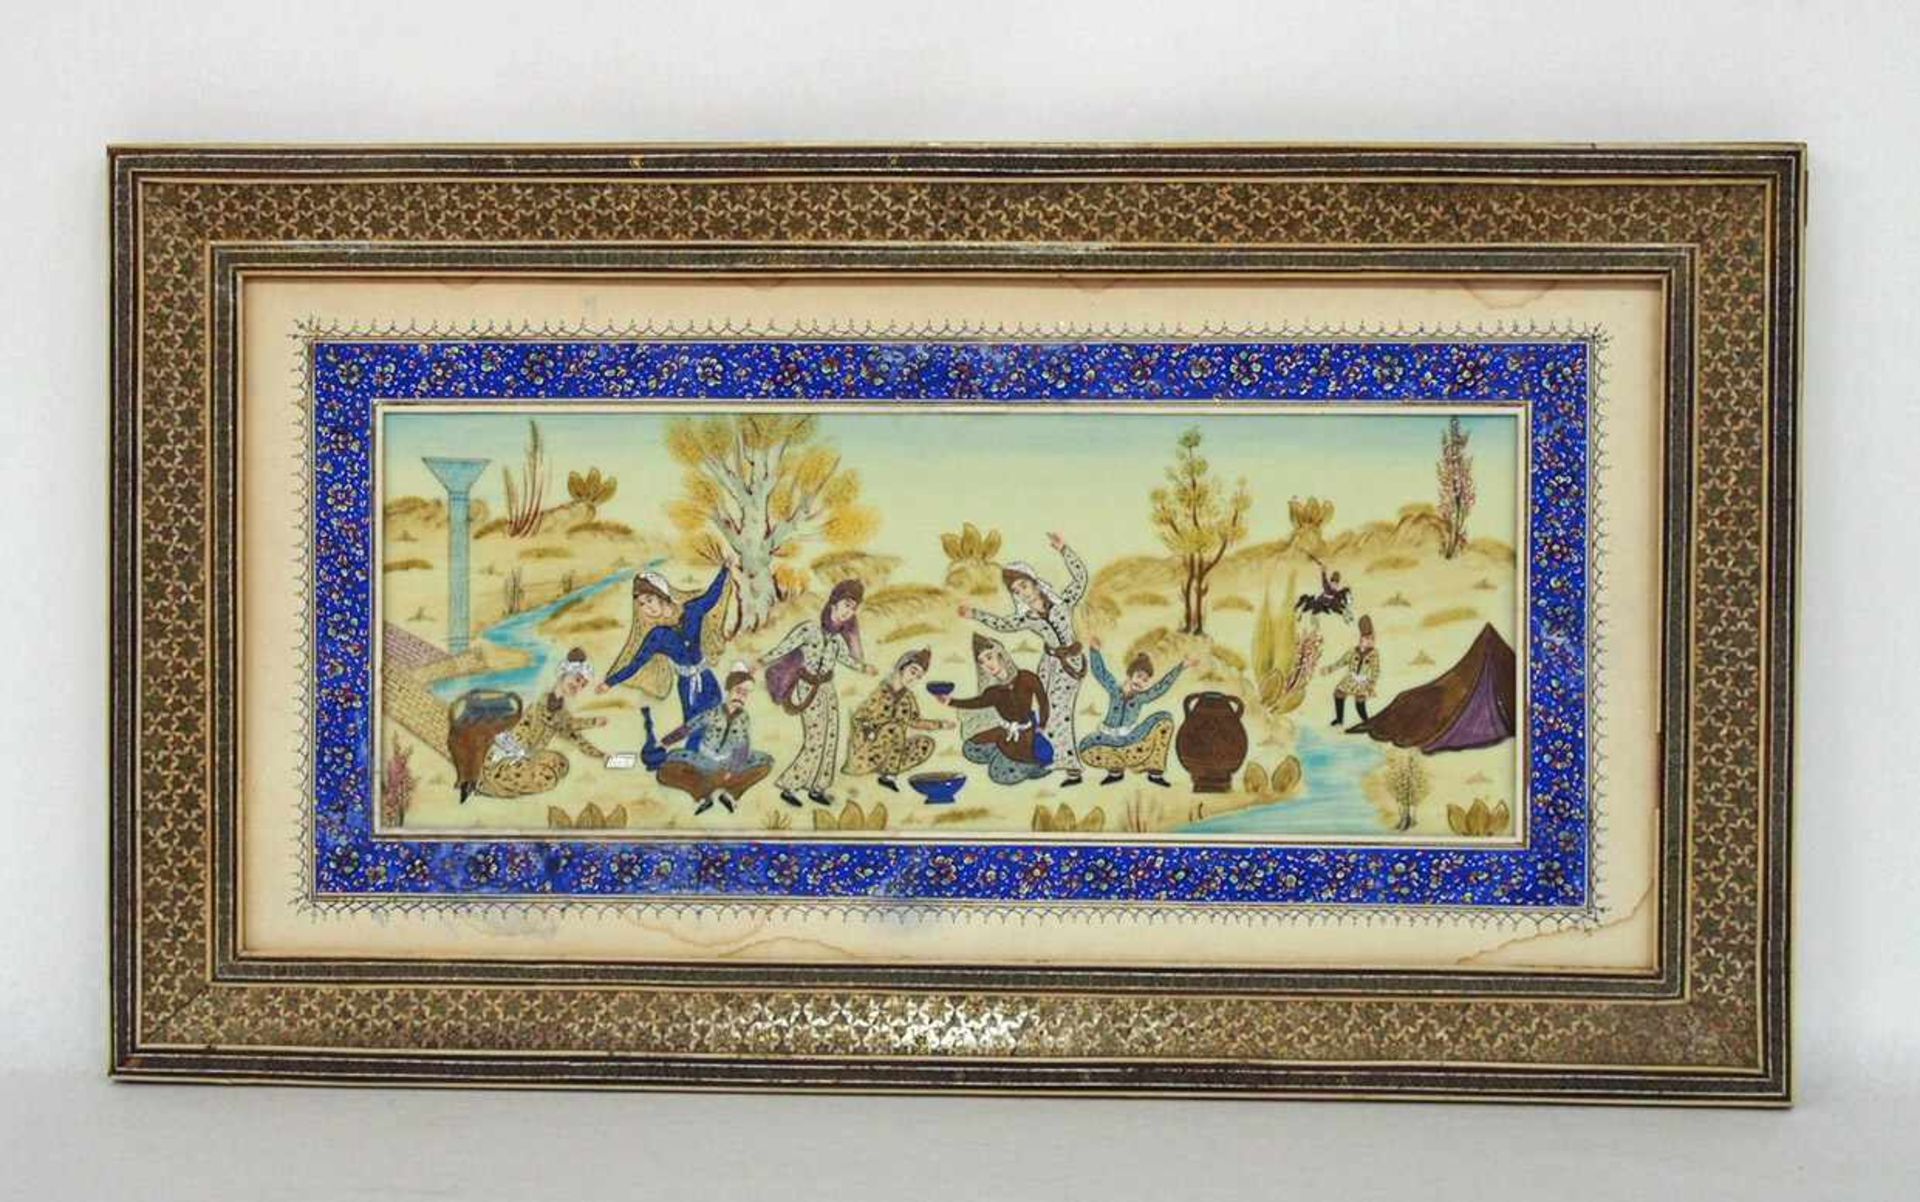 GartenfestMiniaturmalerei auf Elfenbein, Persien, um 1900, 13,5 x 37 cm, gemaltes Passepartout,